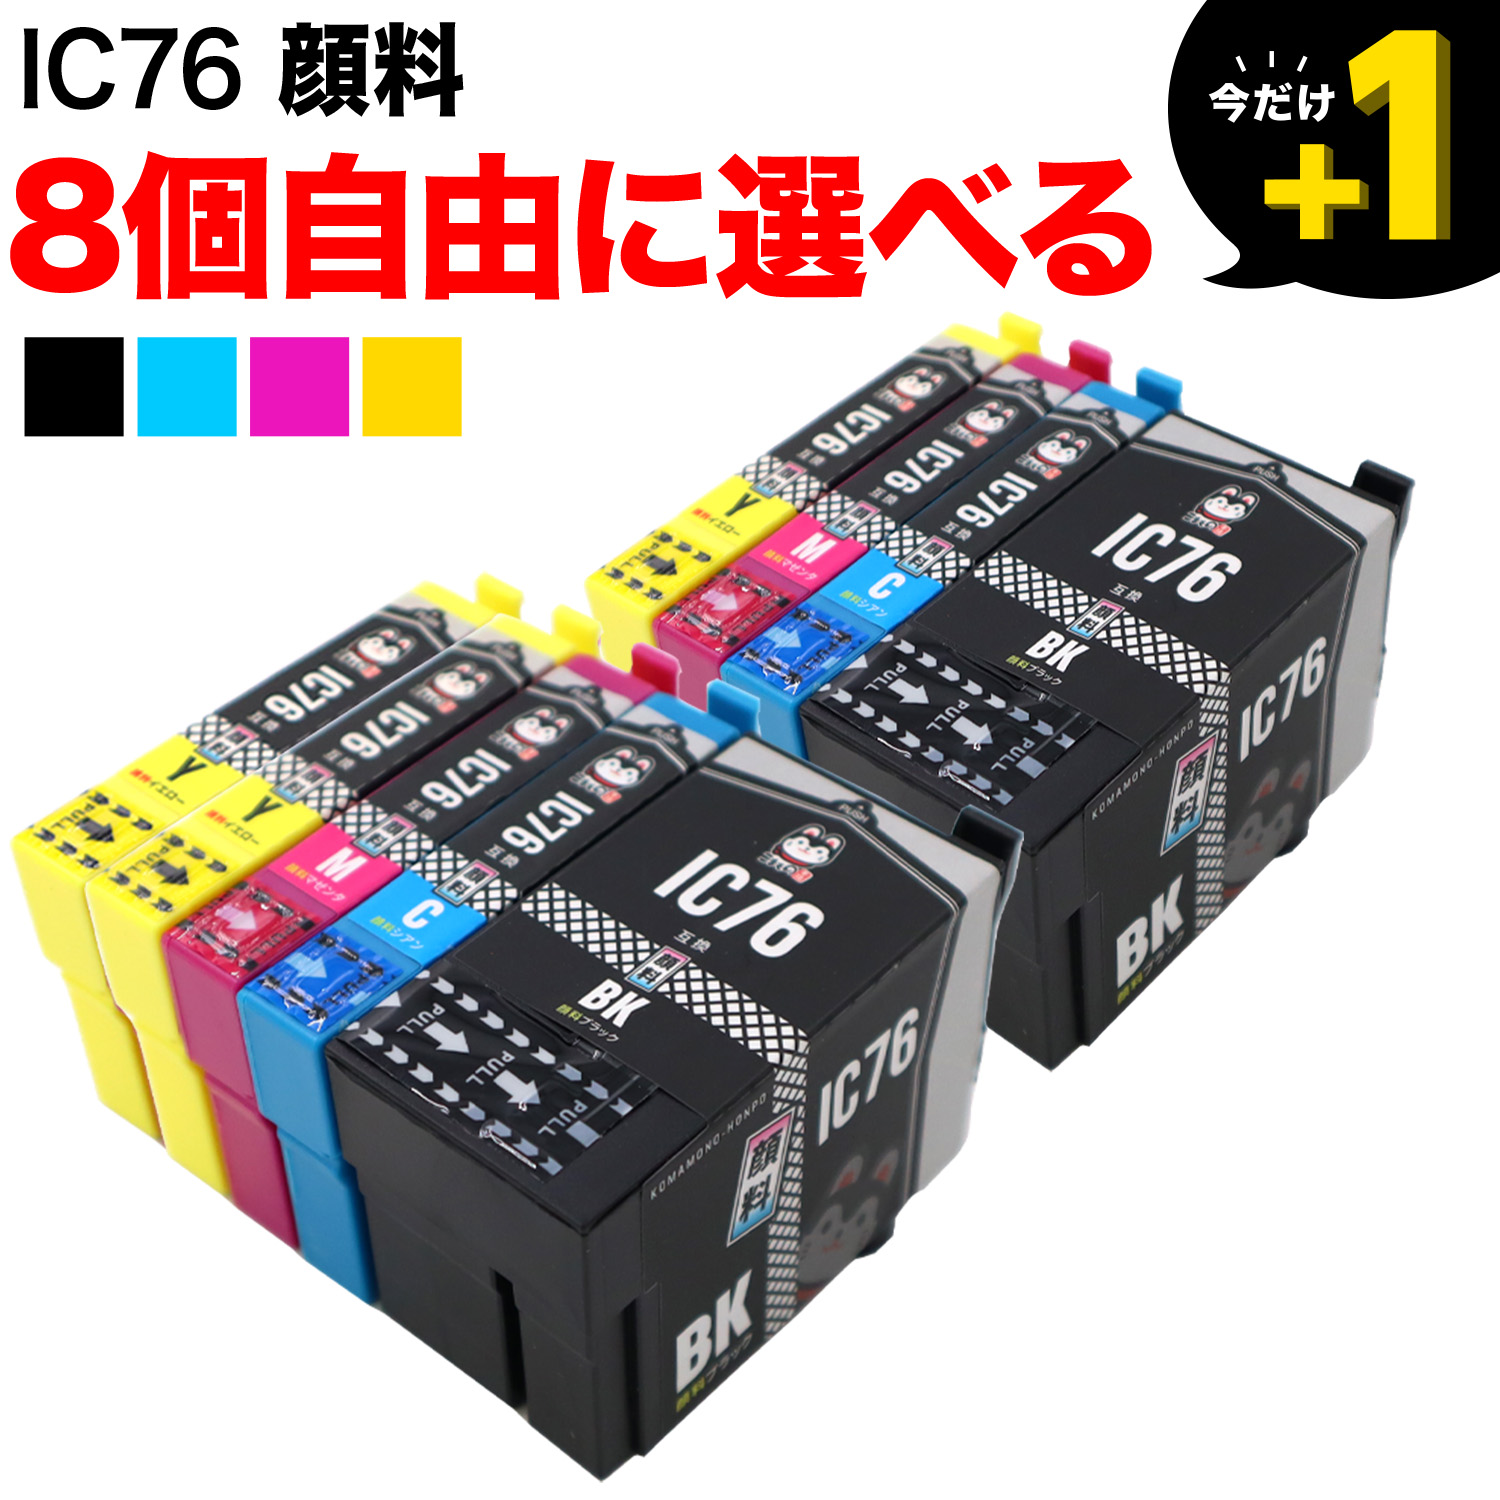 エプソン用 IC76互換インクカートリッジ 大容量 顔料 自由選択8個セット フリーチョイス 【送料無料】 選べる8個セット （品番：QR-FC-IC76PG-8）詳細情報【こまもの本舗】